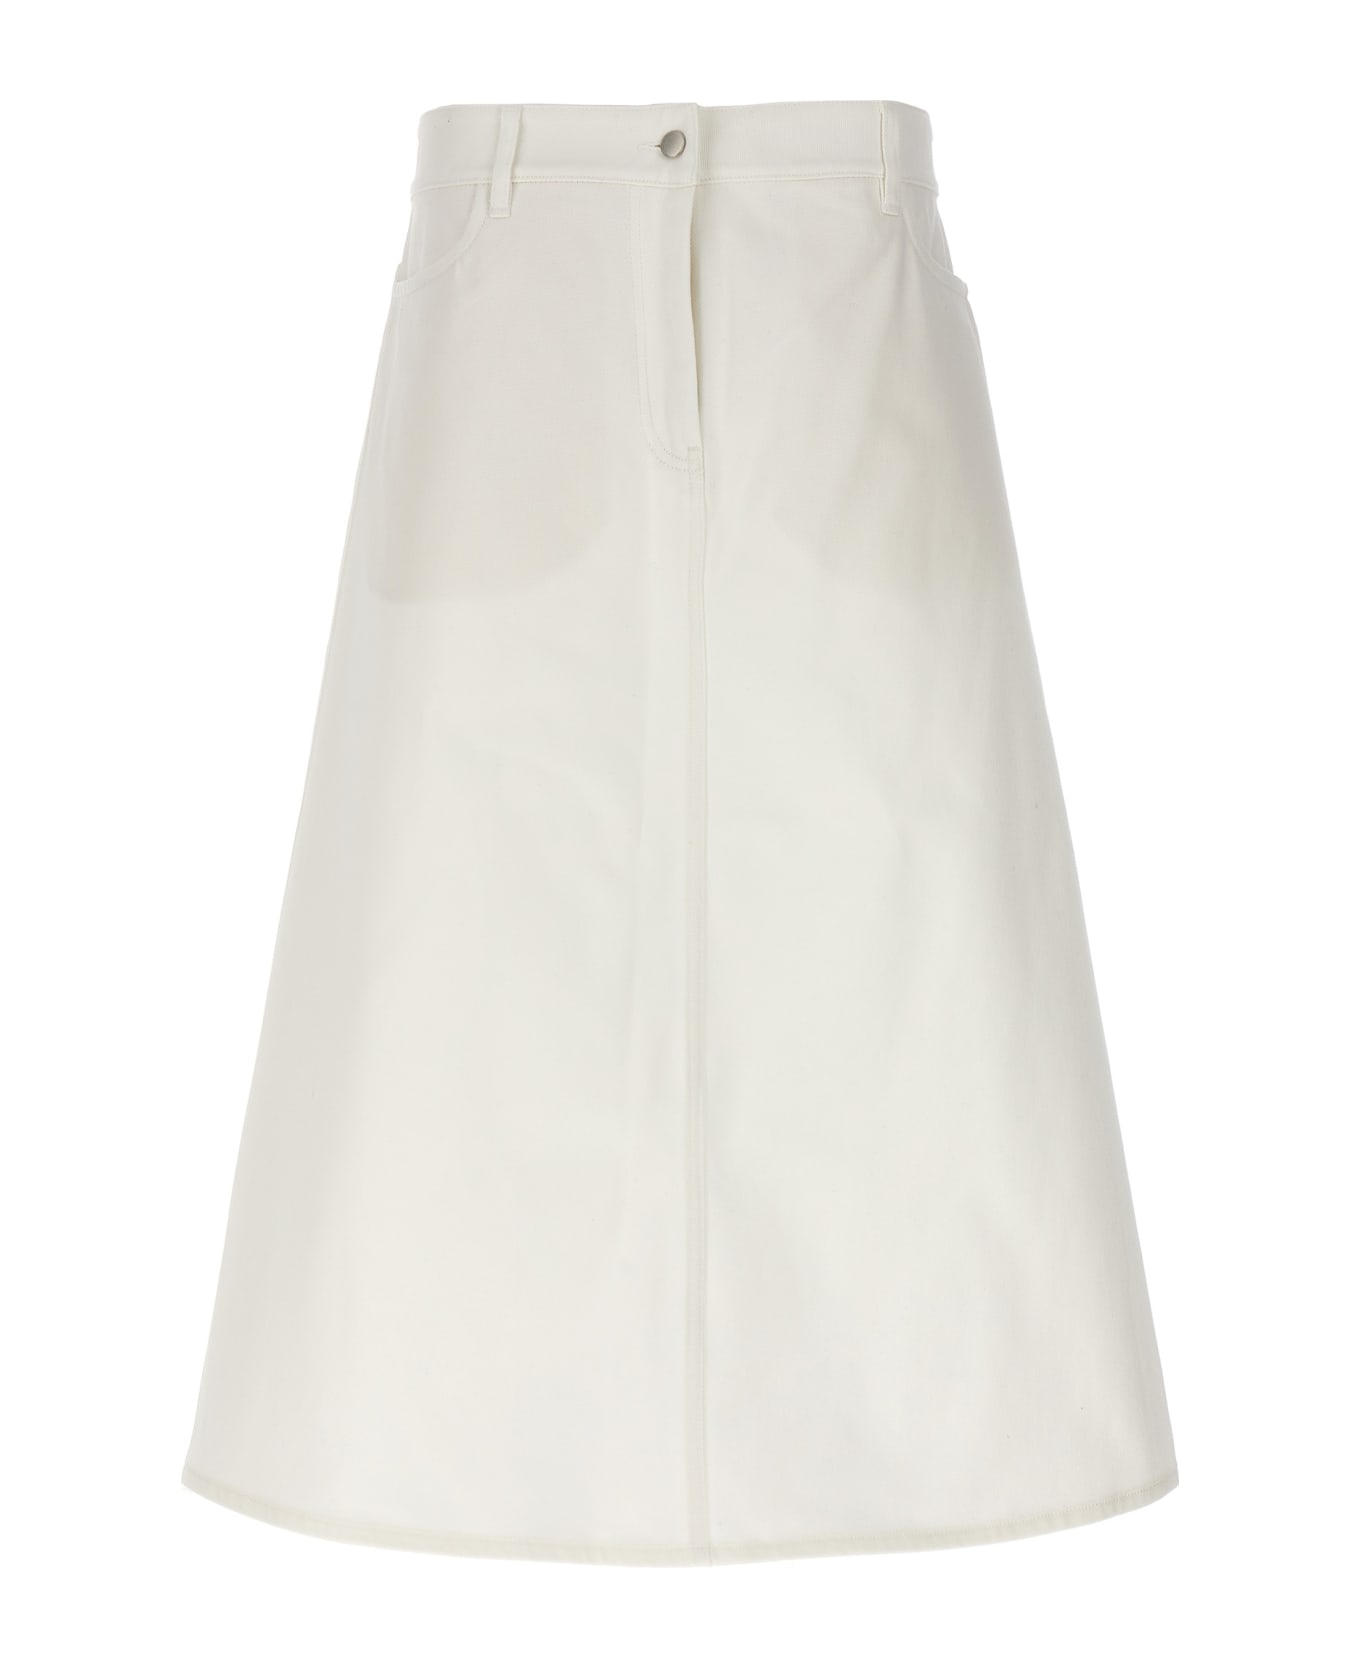 Studio Nicholson 'baringo' Midi Skirt - White